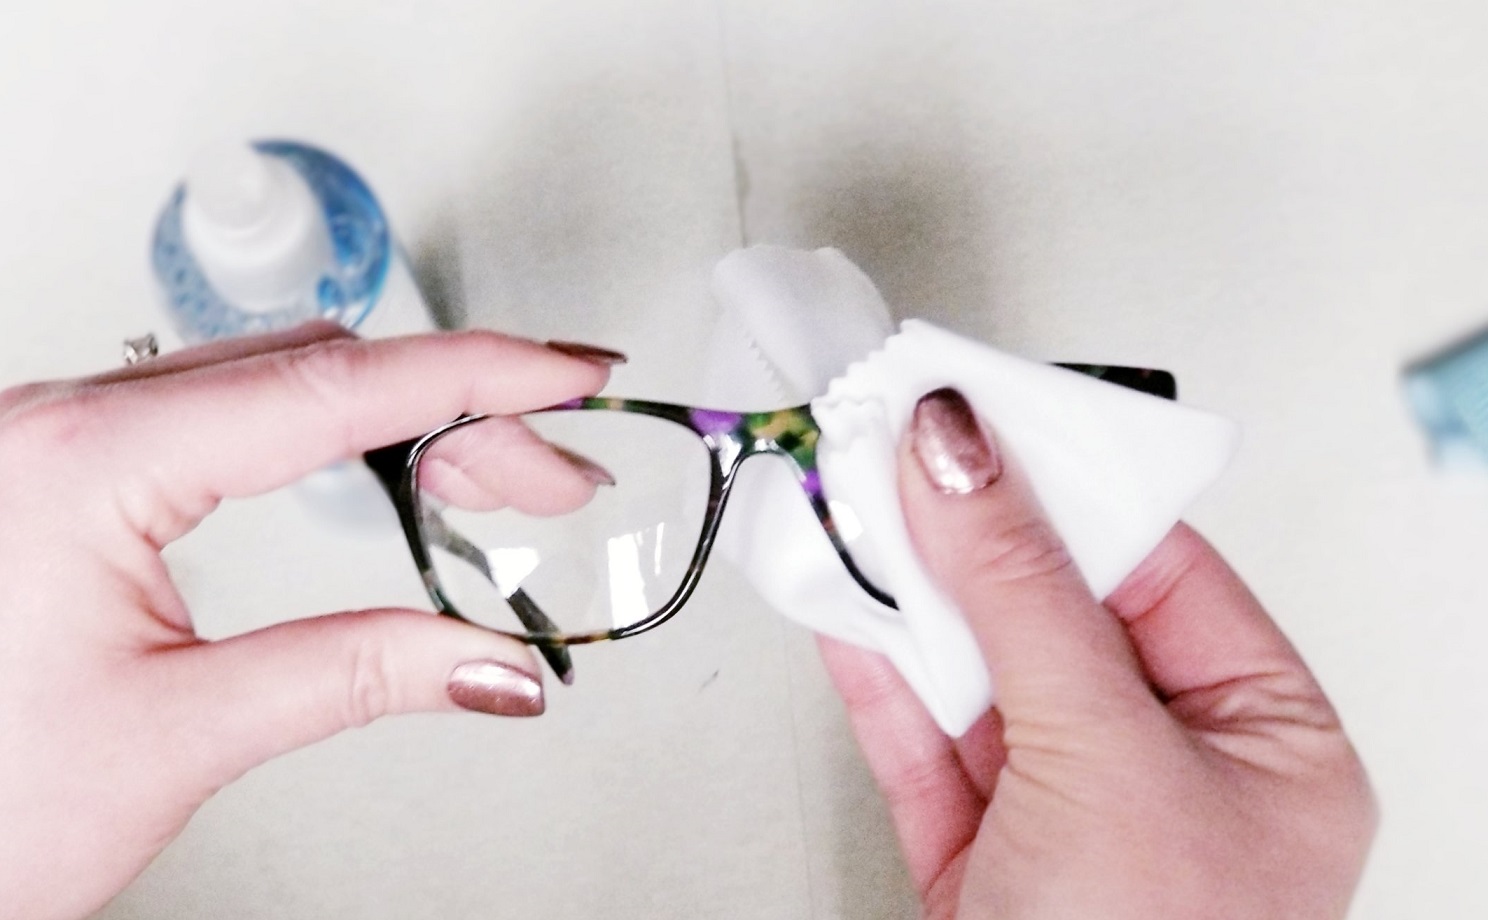 کرم حکاکی شیشه عینک - از بین بردن خط و خش عینک